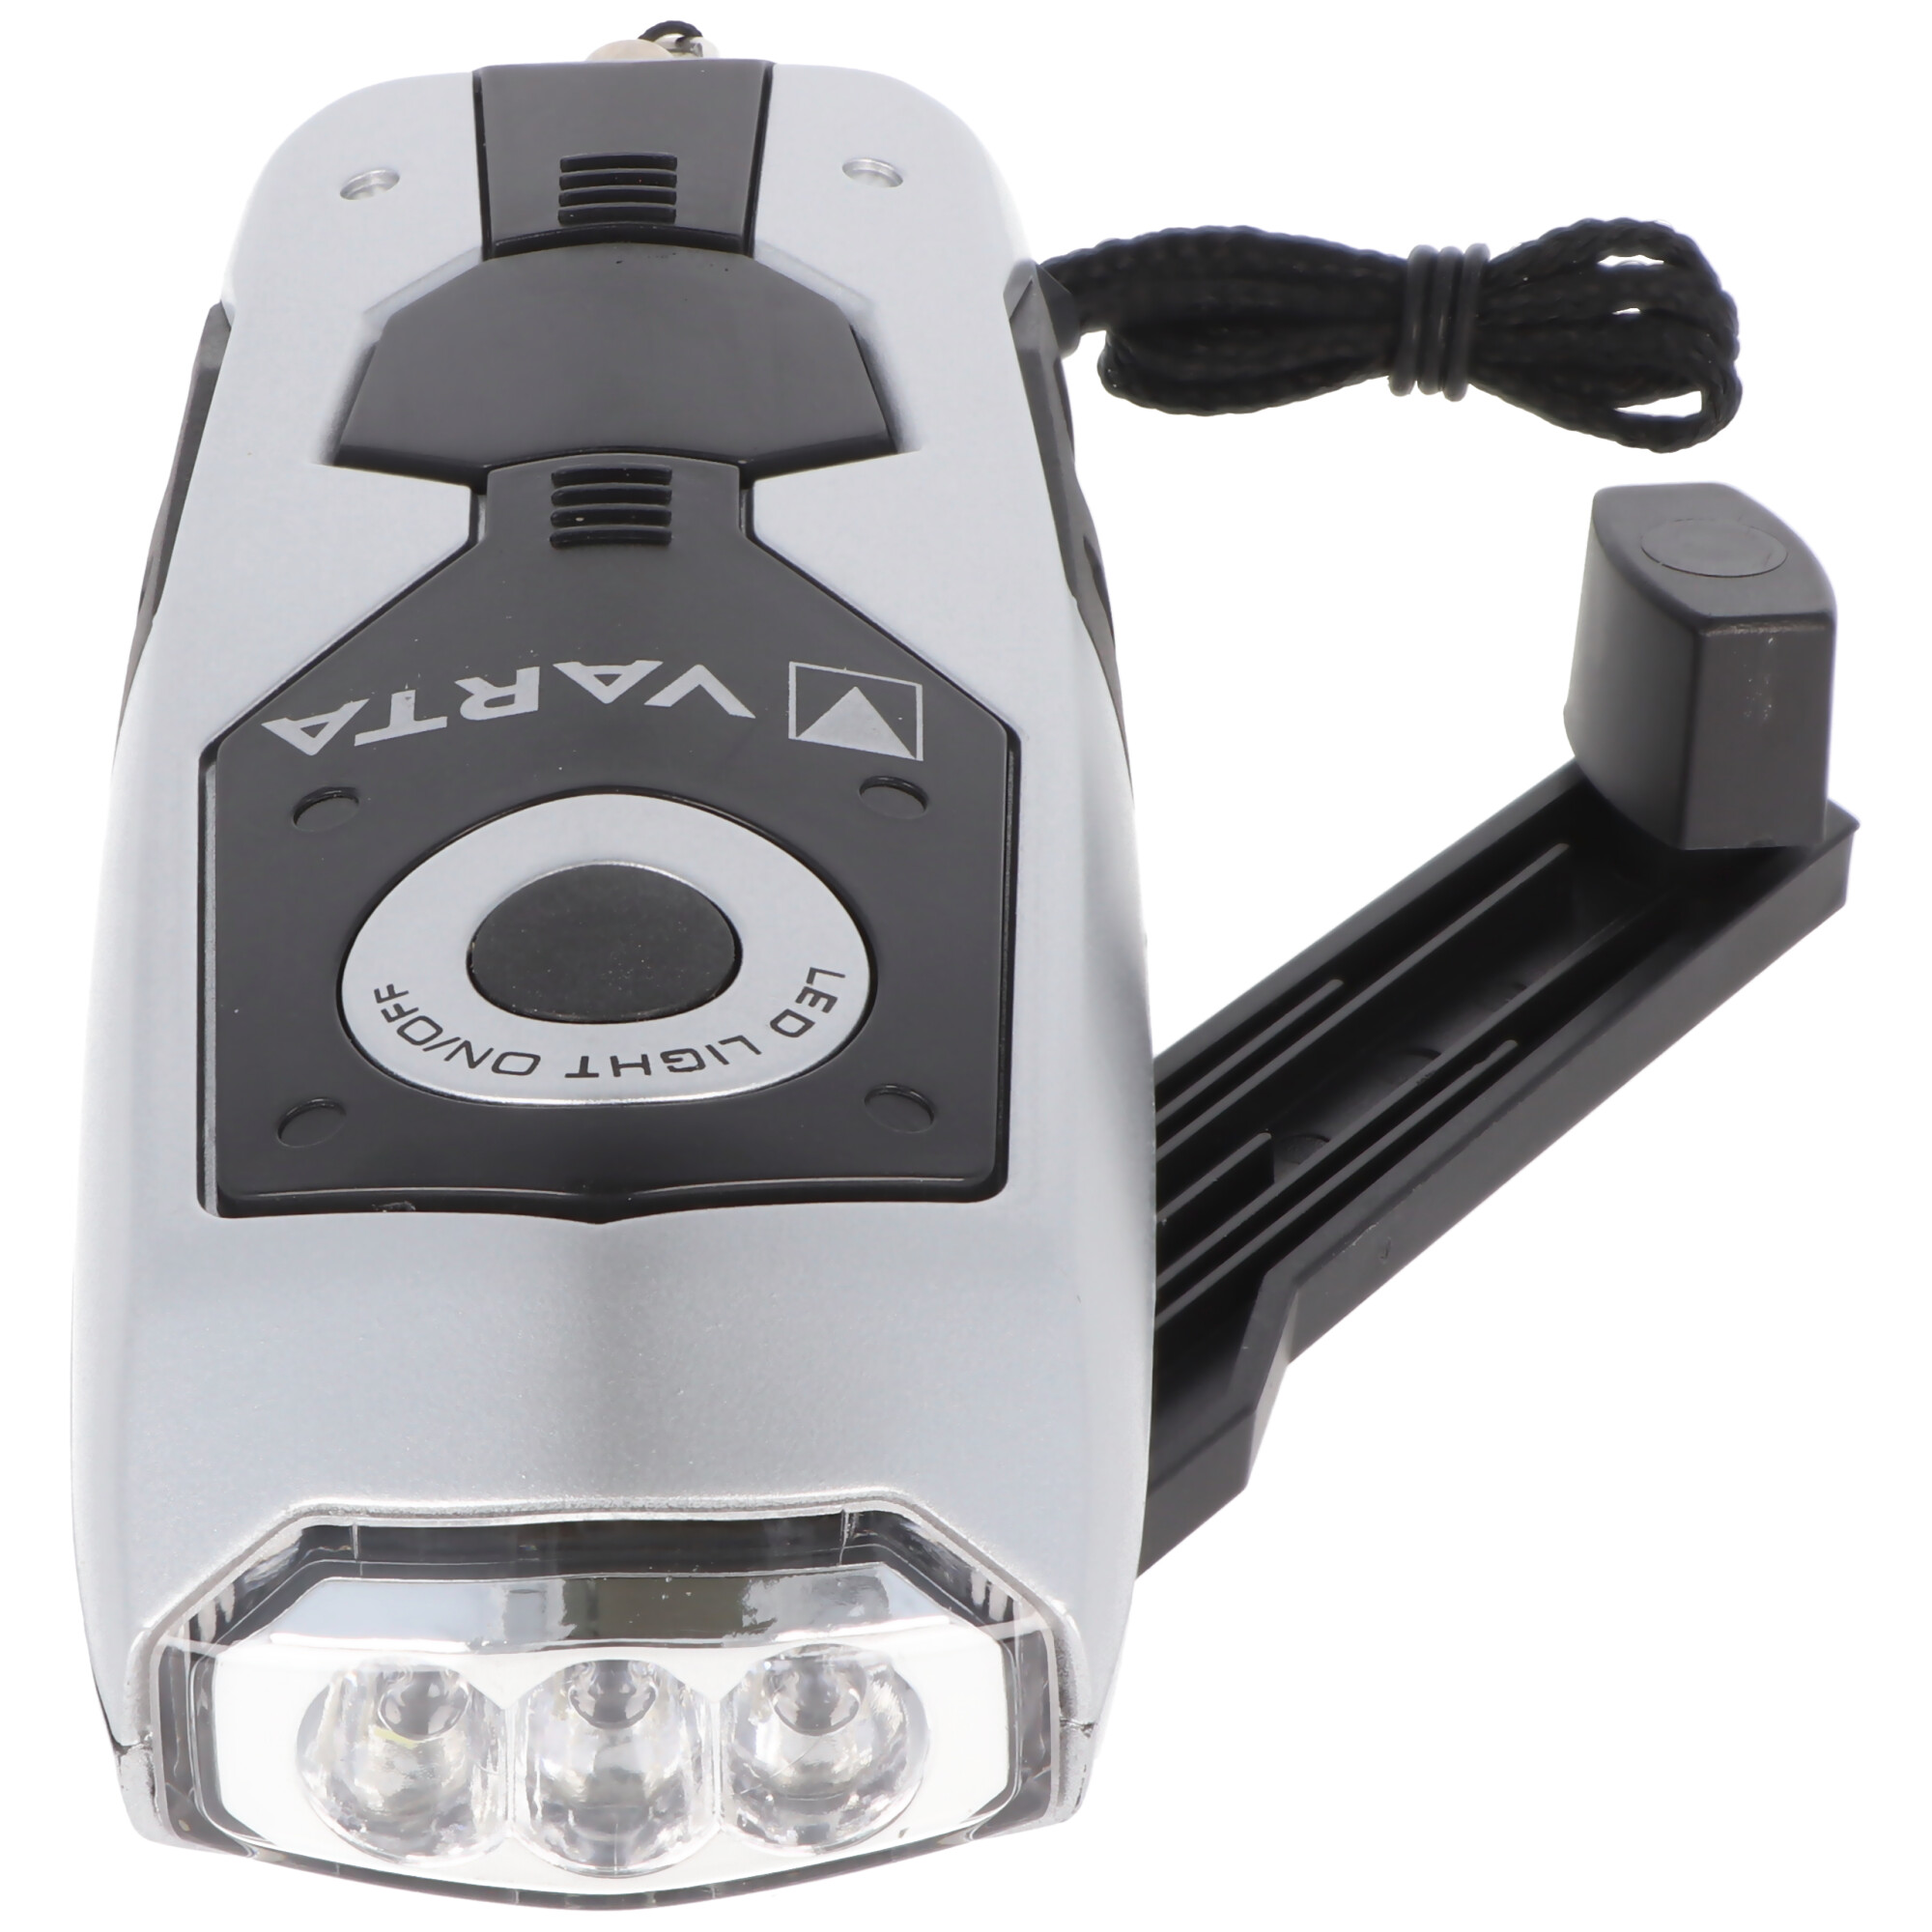 Varta LED Taschenlampe Power Line, Dynamo Light 28 Lumen, dynamobetrieben inklusive Li-Ionen Akku